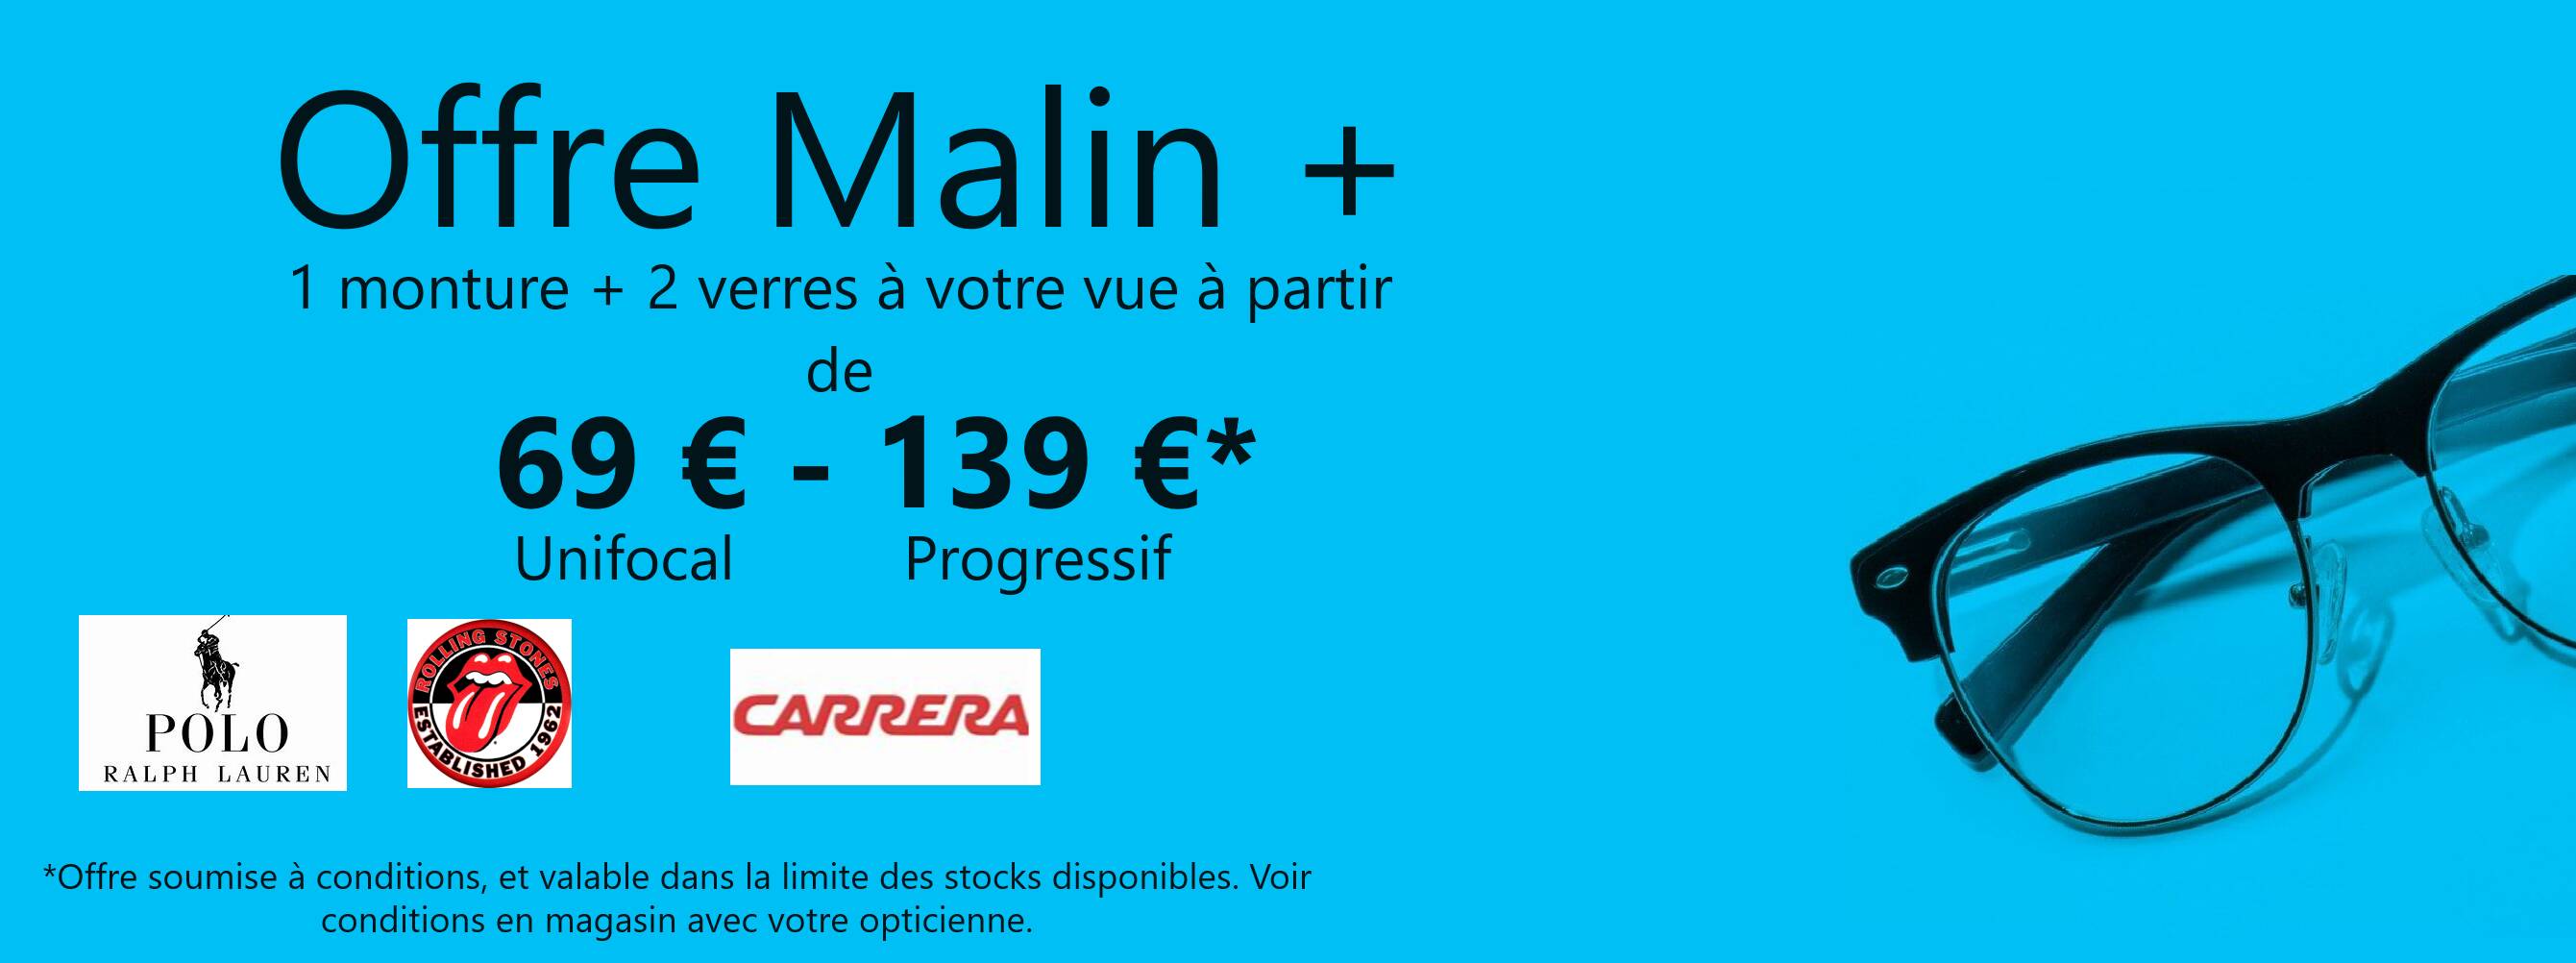 Actualité optique opticien : OFFRE MALIN+ 69€-139€